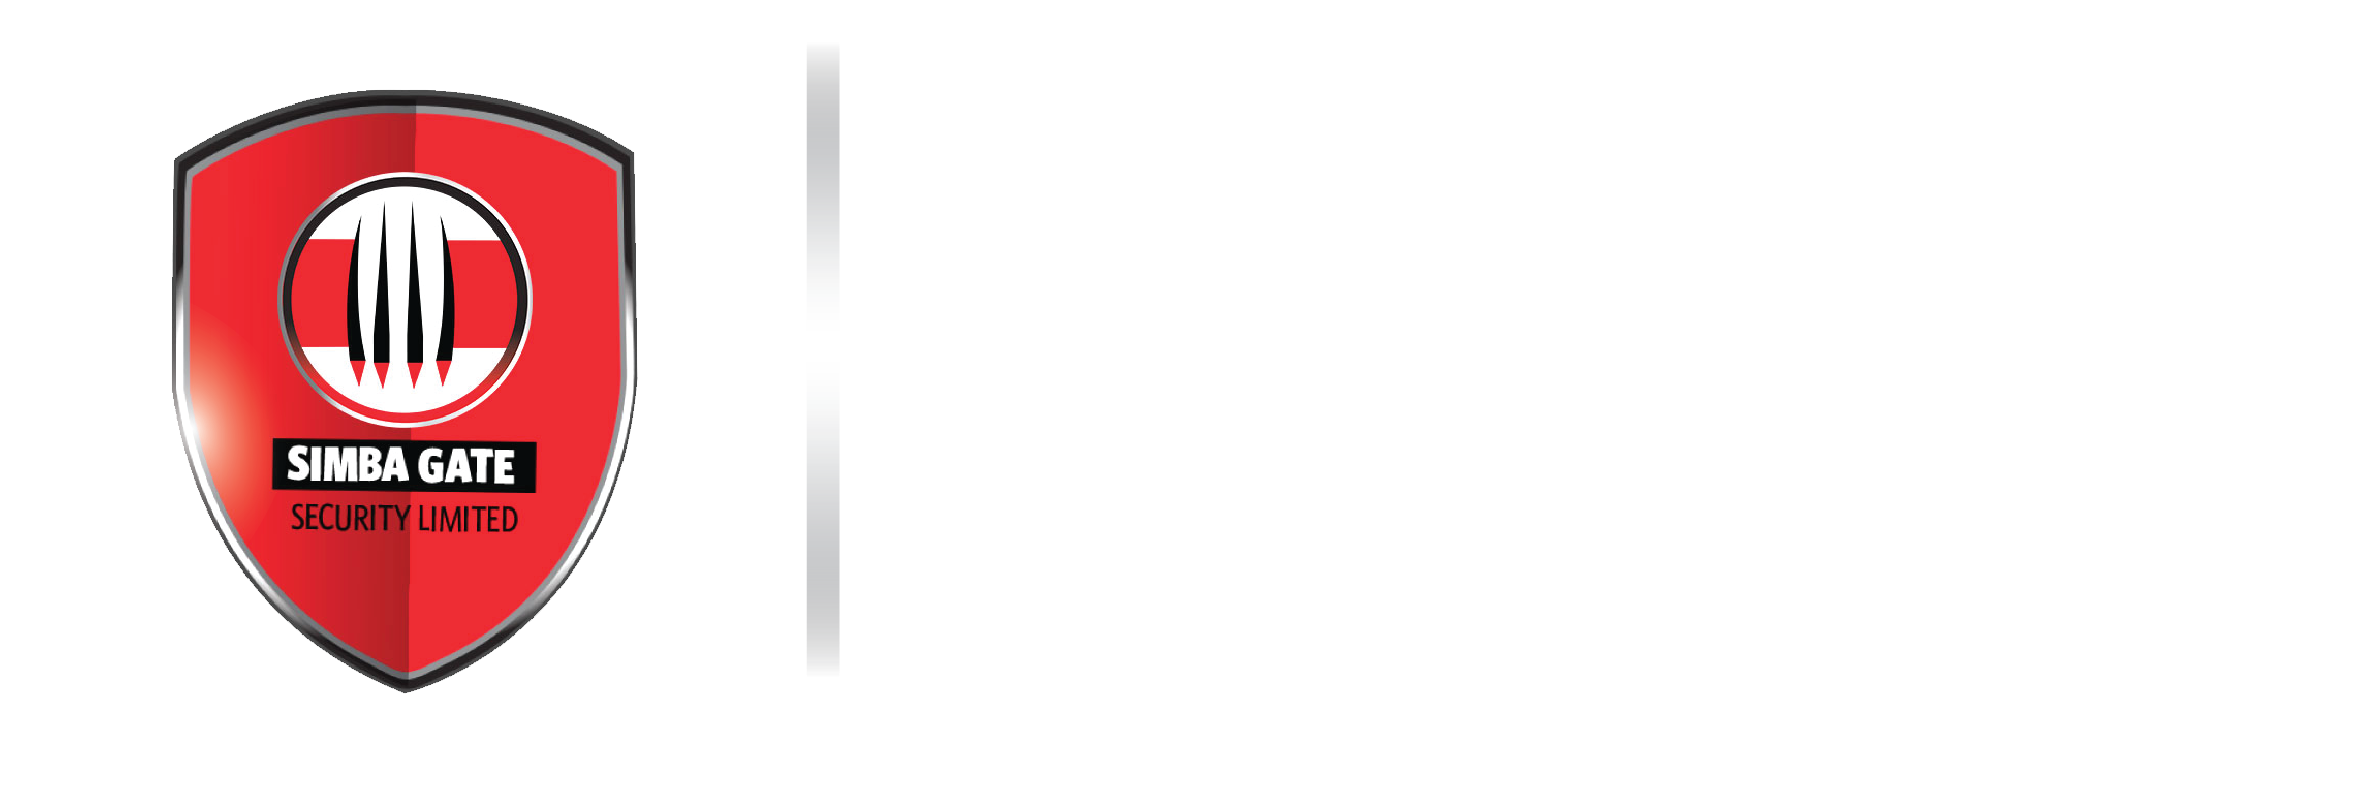 Simba Gate Security